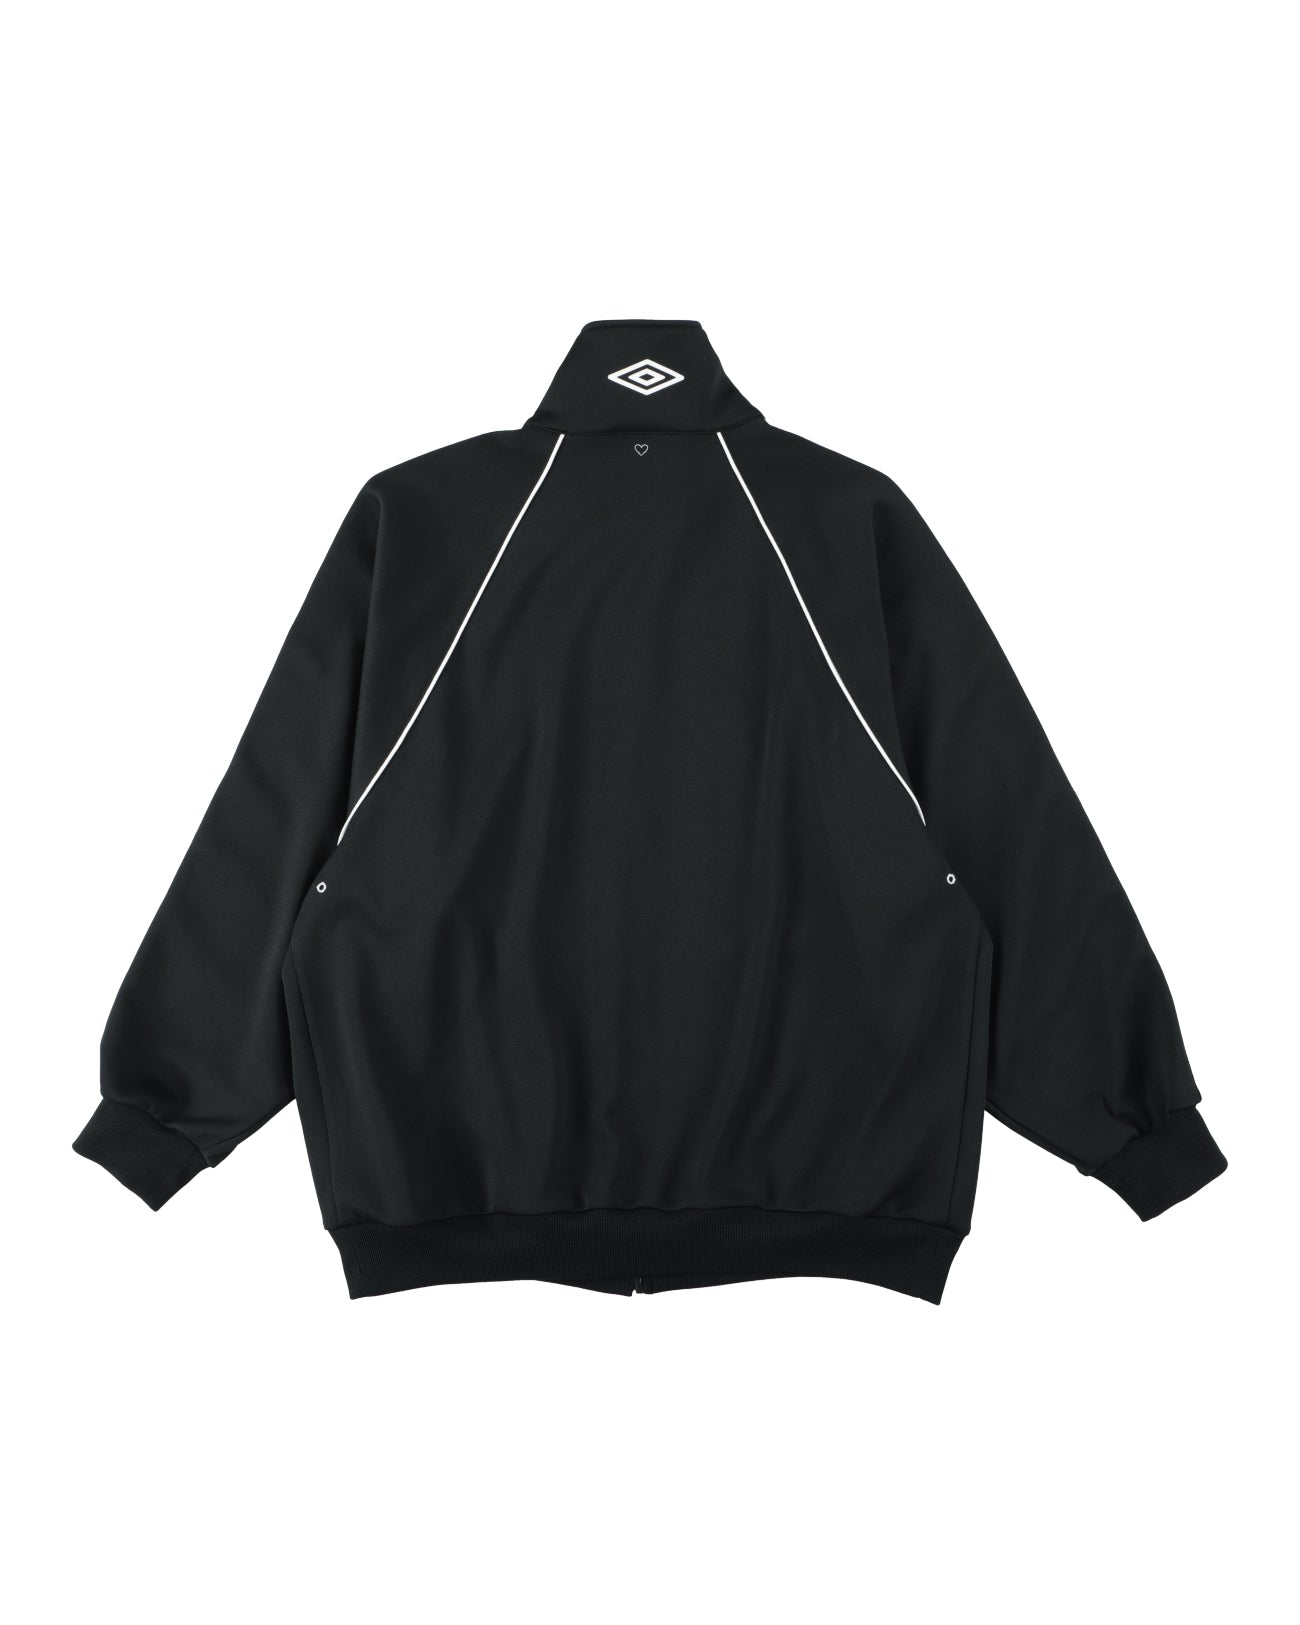 x UMBRO Oversized Track Jacket - black - FAB4 ONLINE STORE